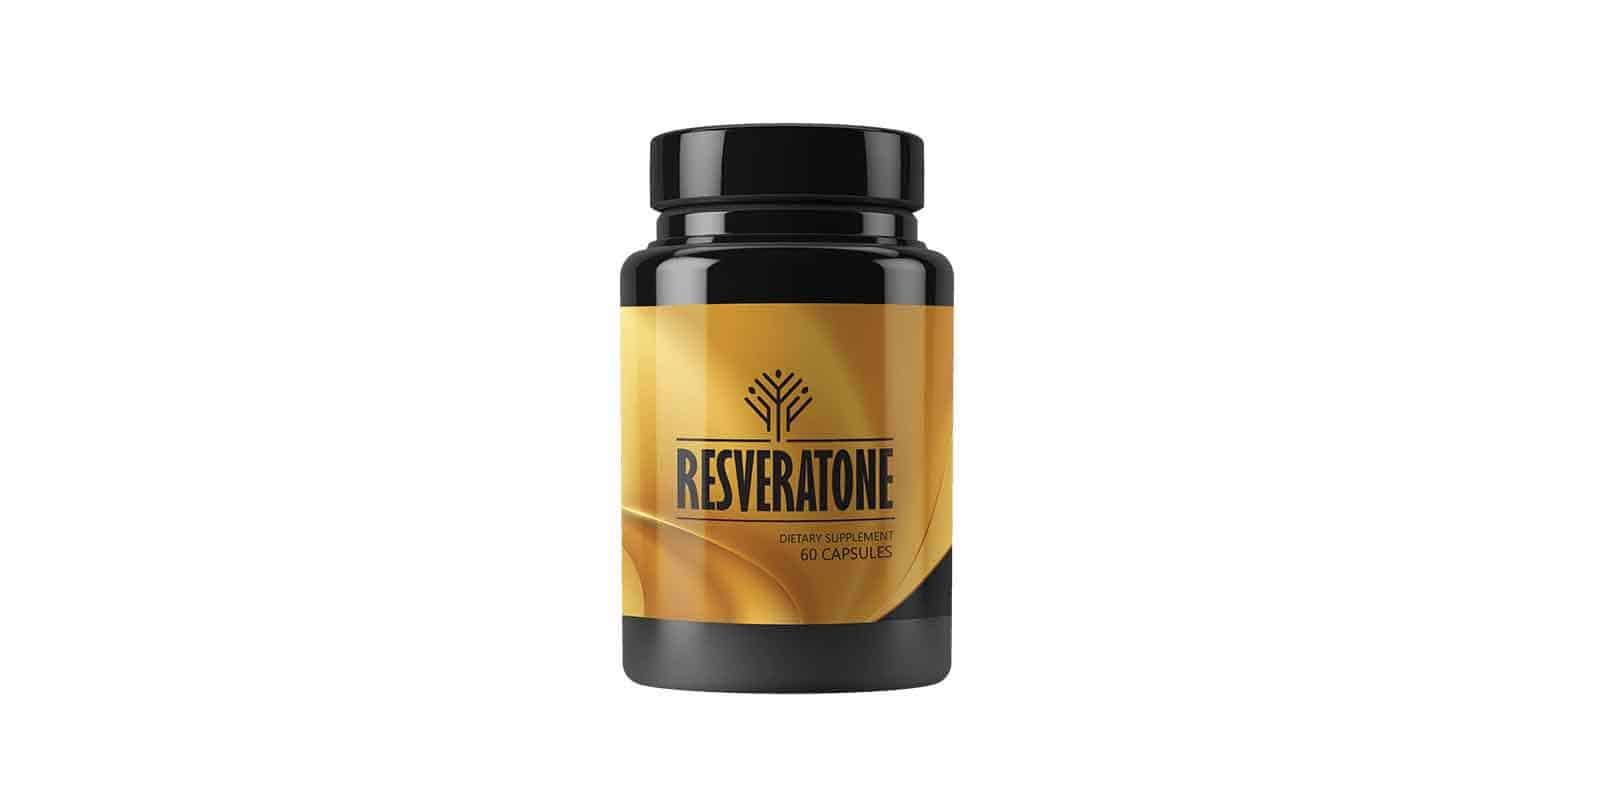 Resveratone Review